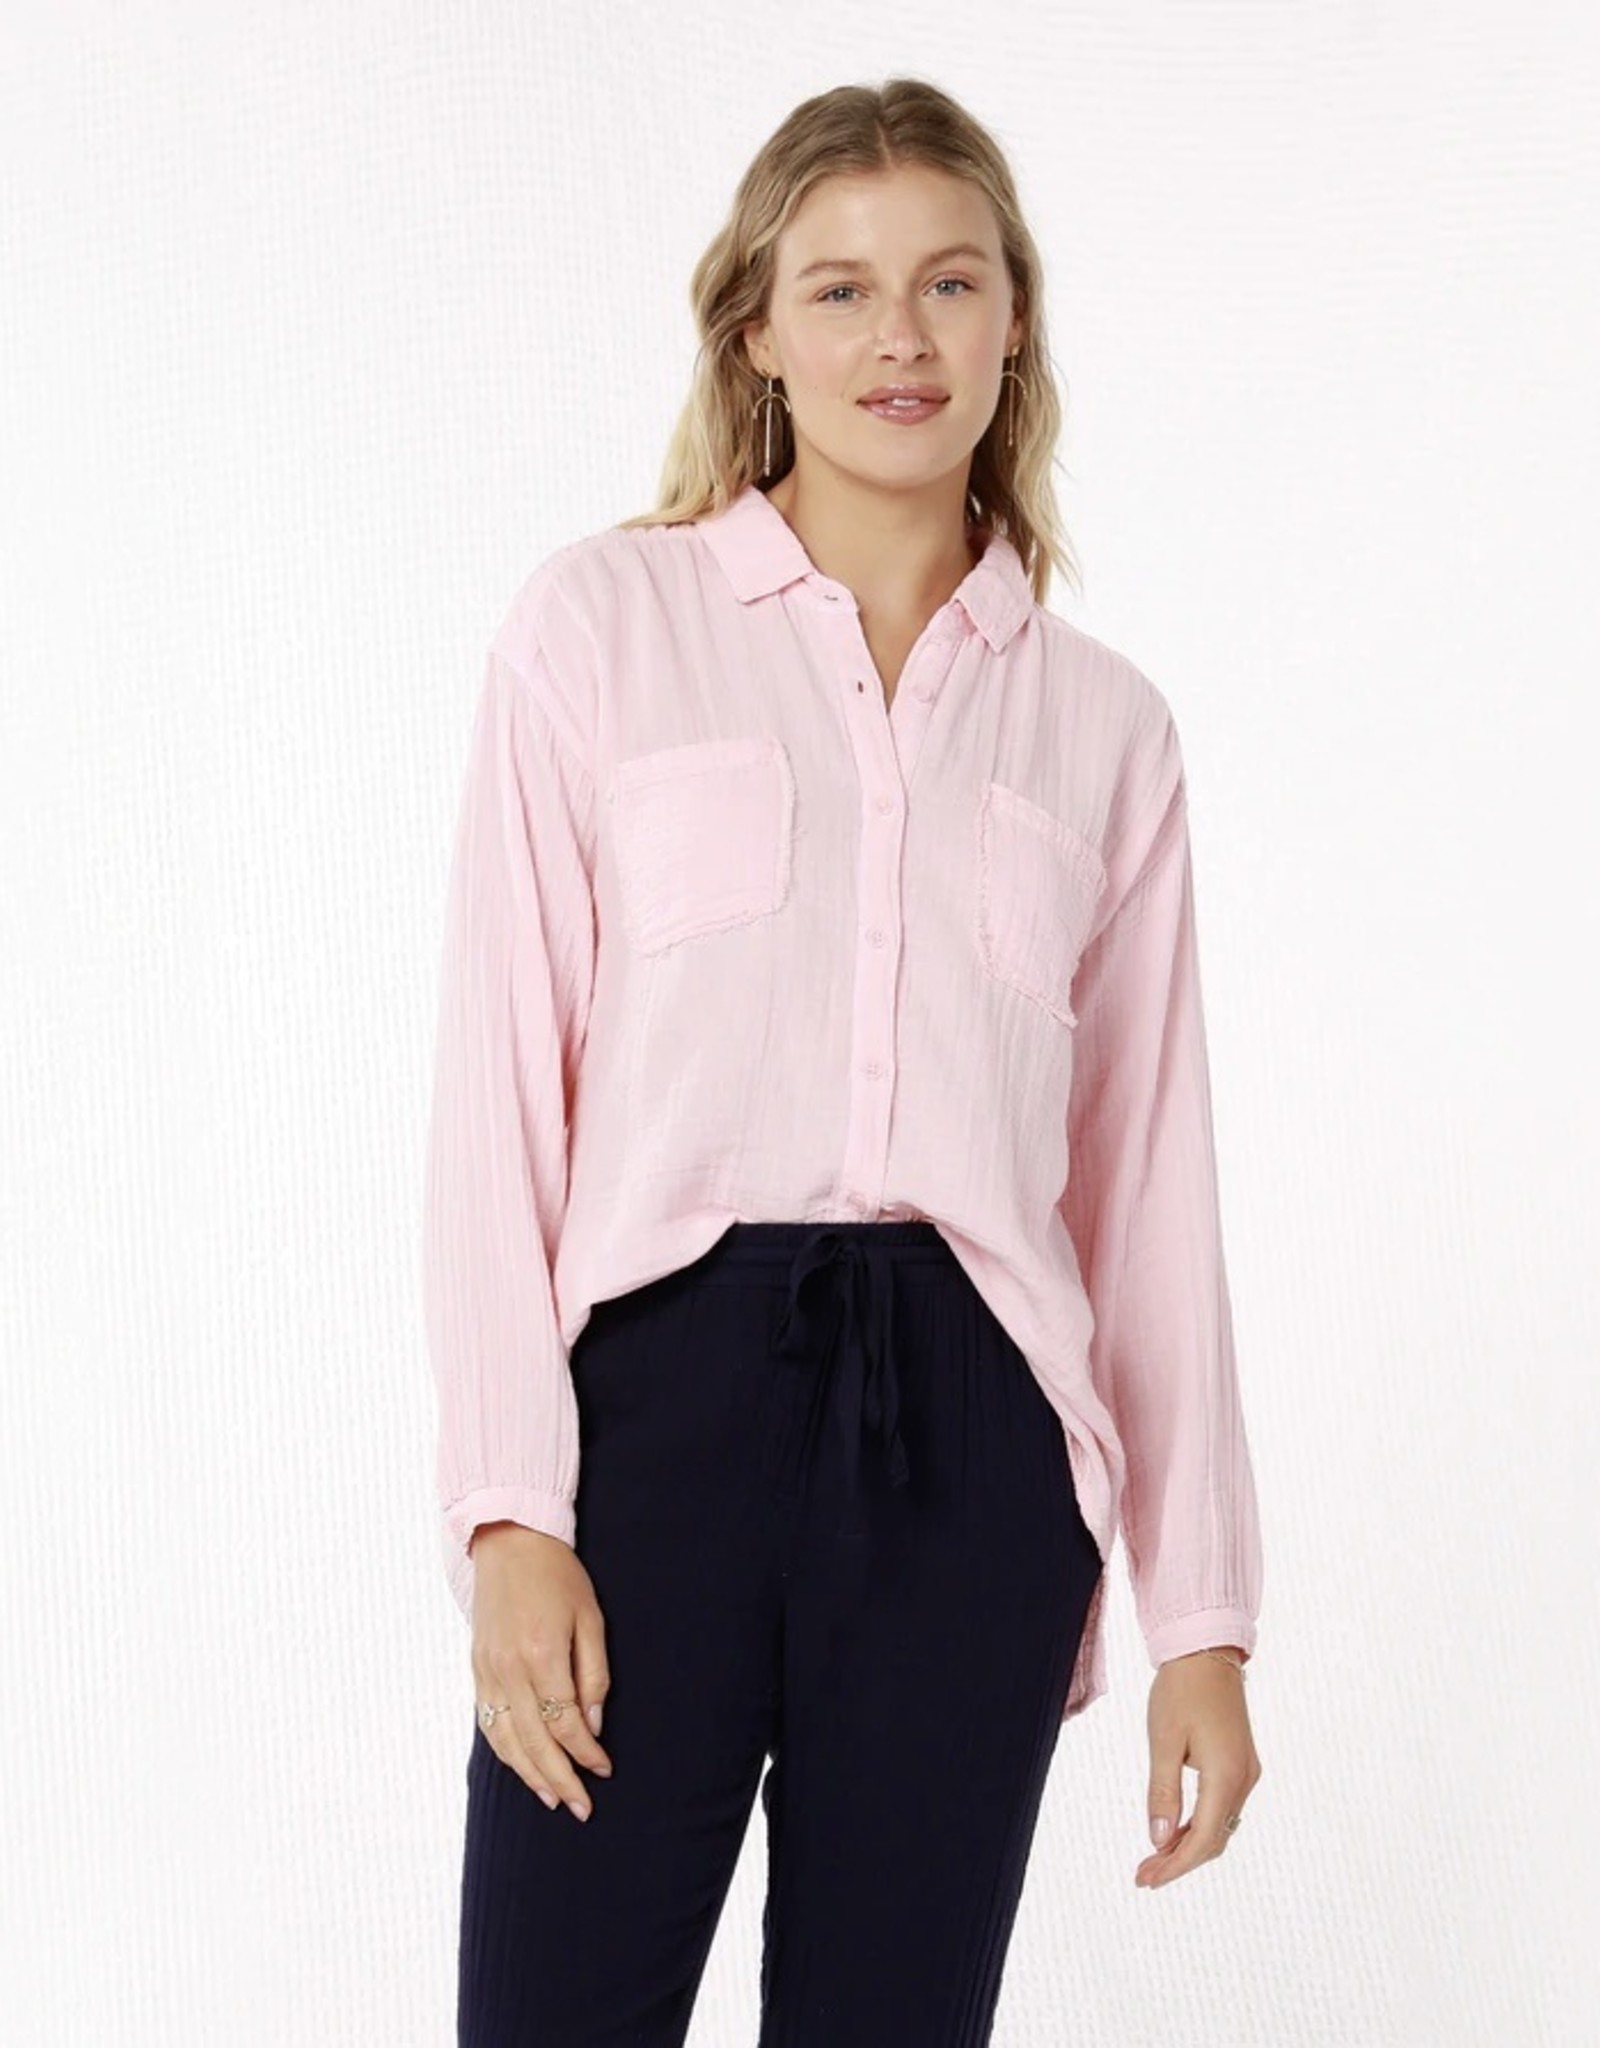 Mododoc Mododoc L0105 Long Sleeve Flowy Button Up Shirt